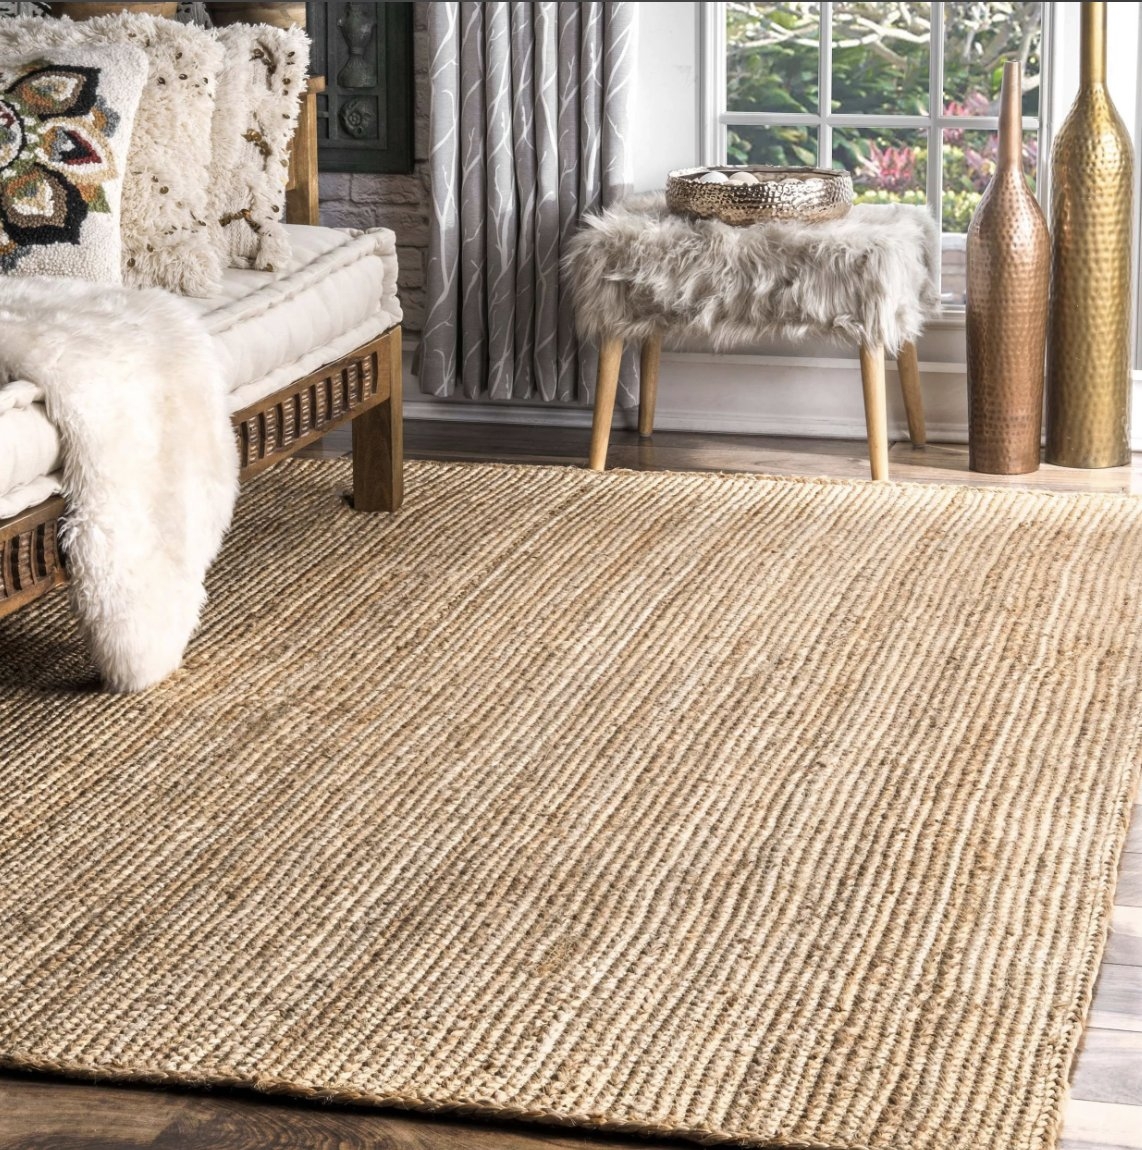 Hand Woven Rigo Jute rug / Natural /8'x10' - Image 1